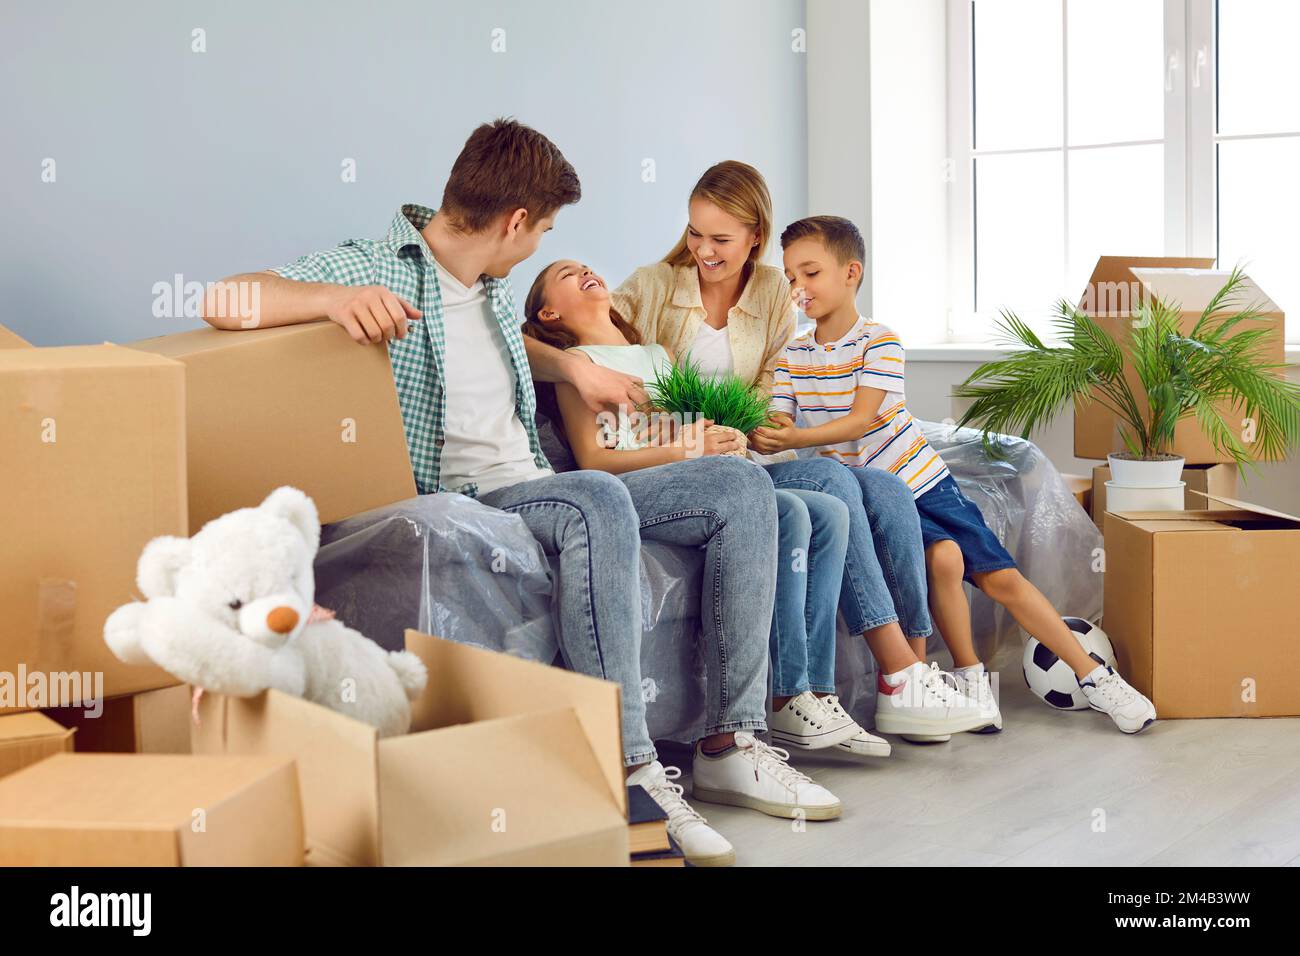 Müde, glückliche Familie mit zwei Kindern, die sich auf dem Sofa zwischen Boxen ruhten, während sie in ein neues Haus zogen. Stockfoto